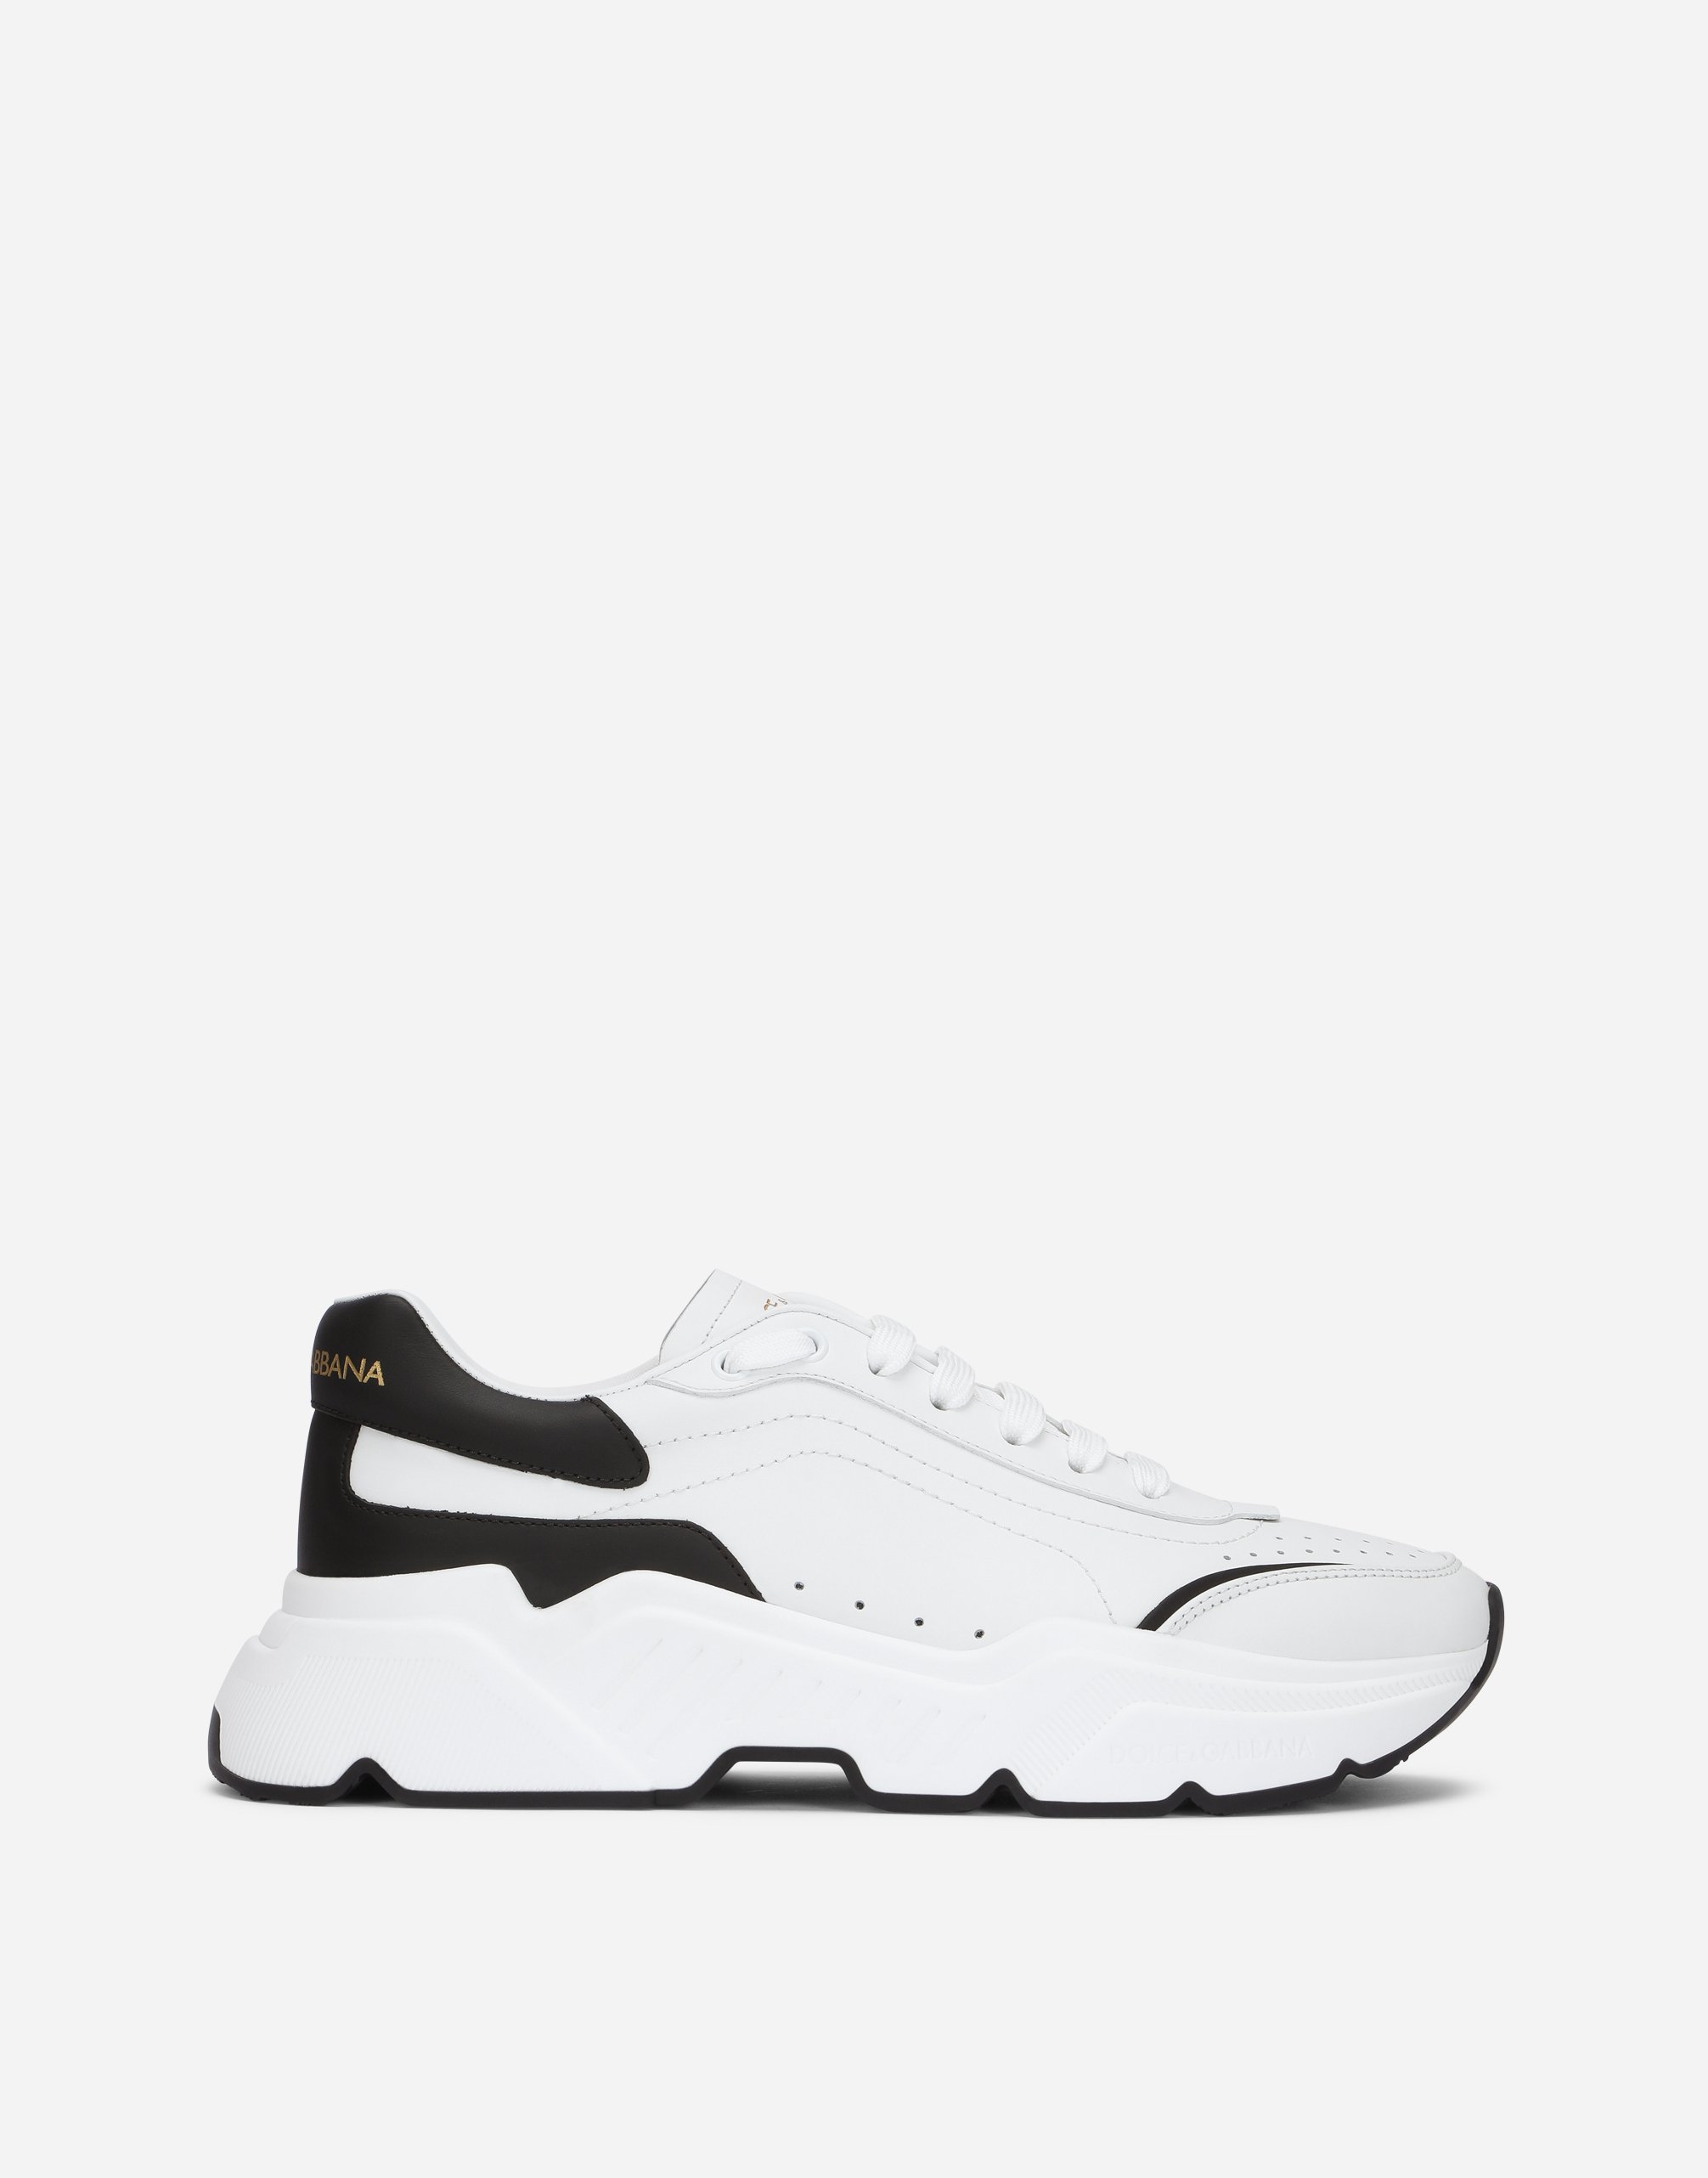 Daymaster sneakers in nappa calfskin in White/Black for Men | Dolce&Gabbana®